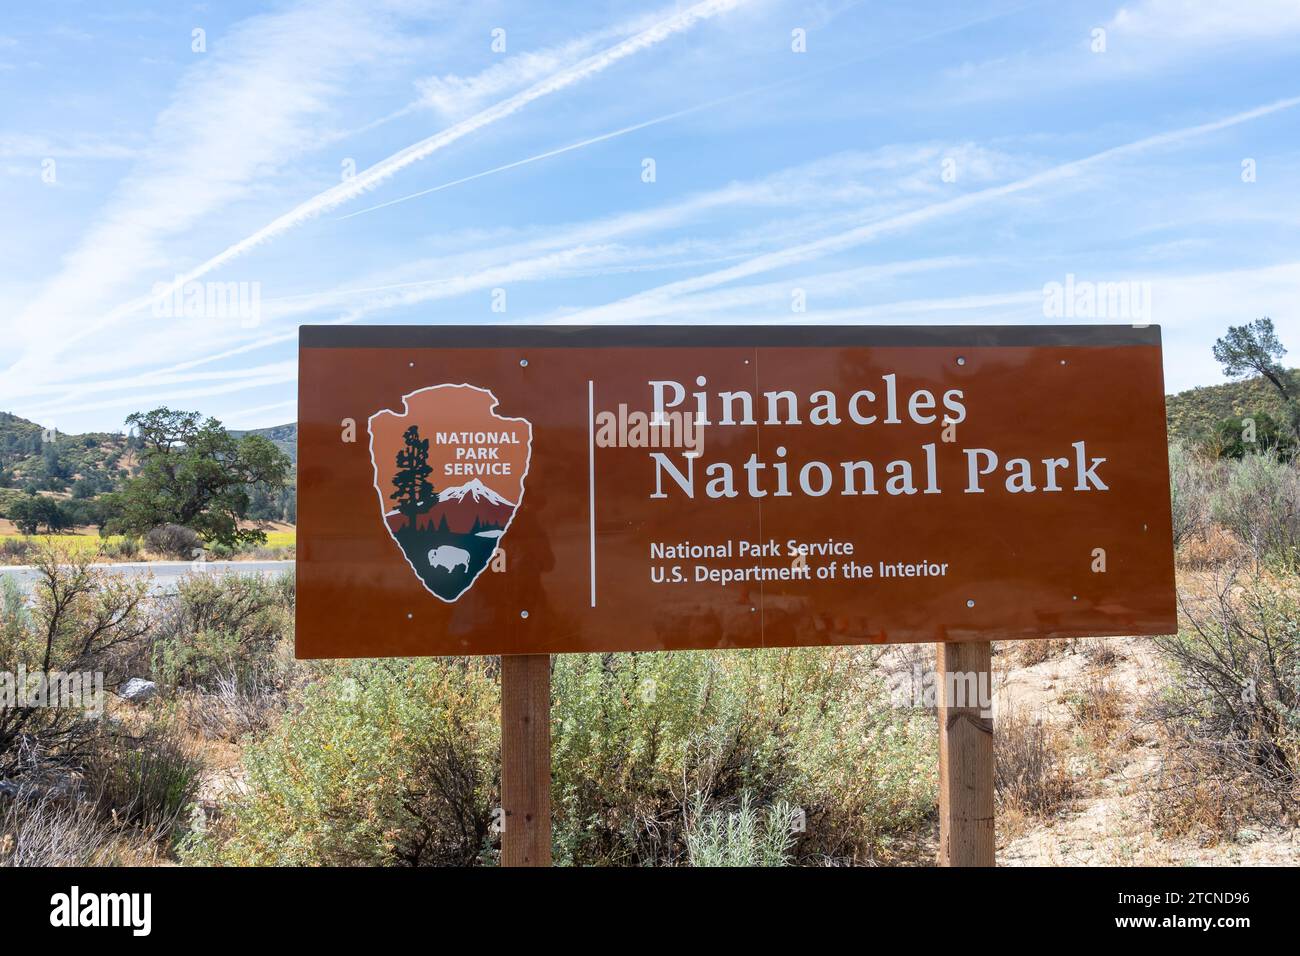 Il cartello del Pinnacles National Park è visibile in California, Stati Uniti Foto Stock